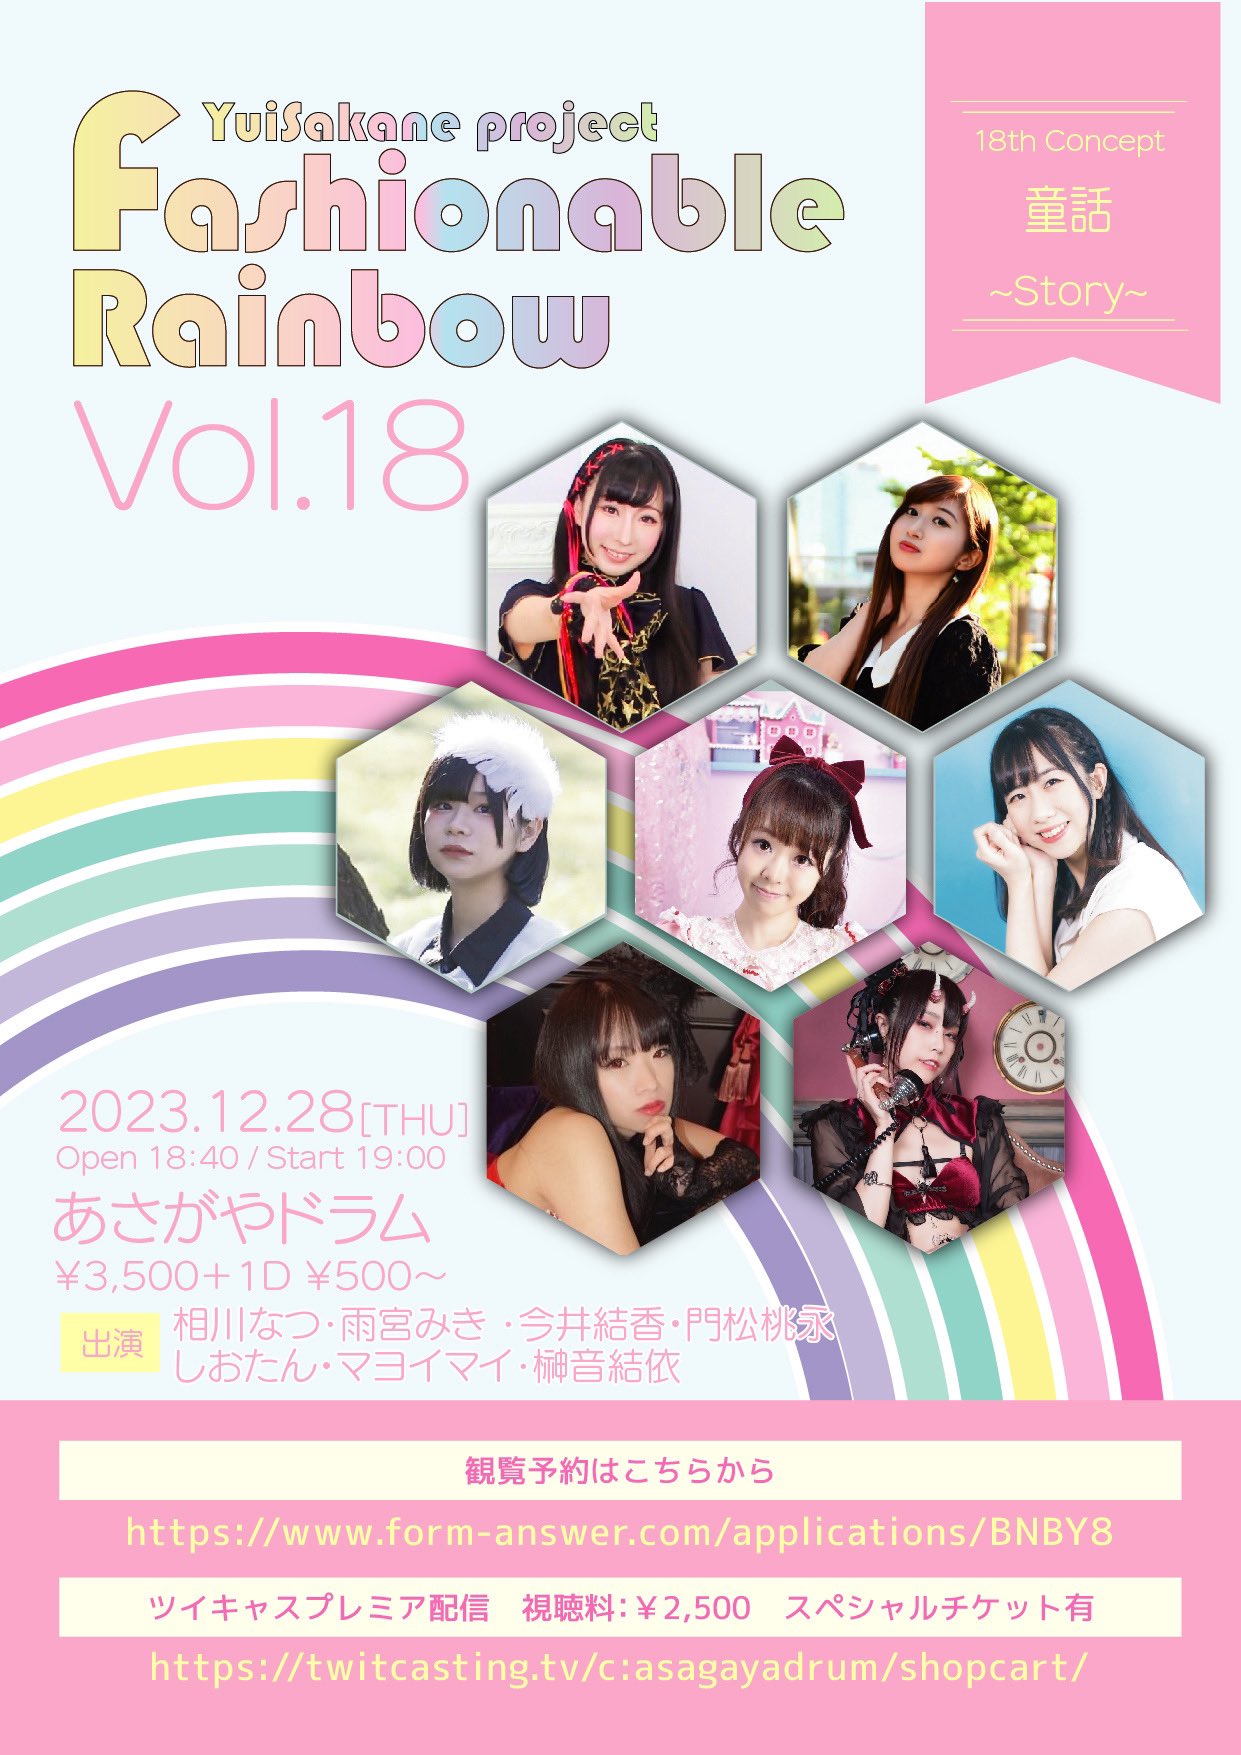 12月28日(木) YuiSakane project「Fashionable Rainbow vol.18 童話~Story~」に出演します!!!